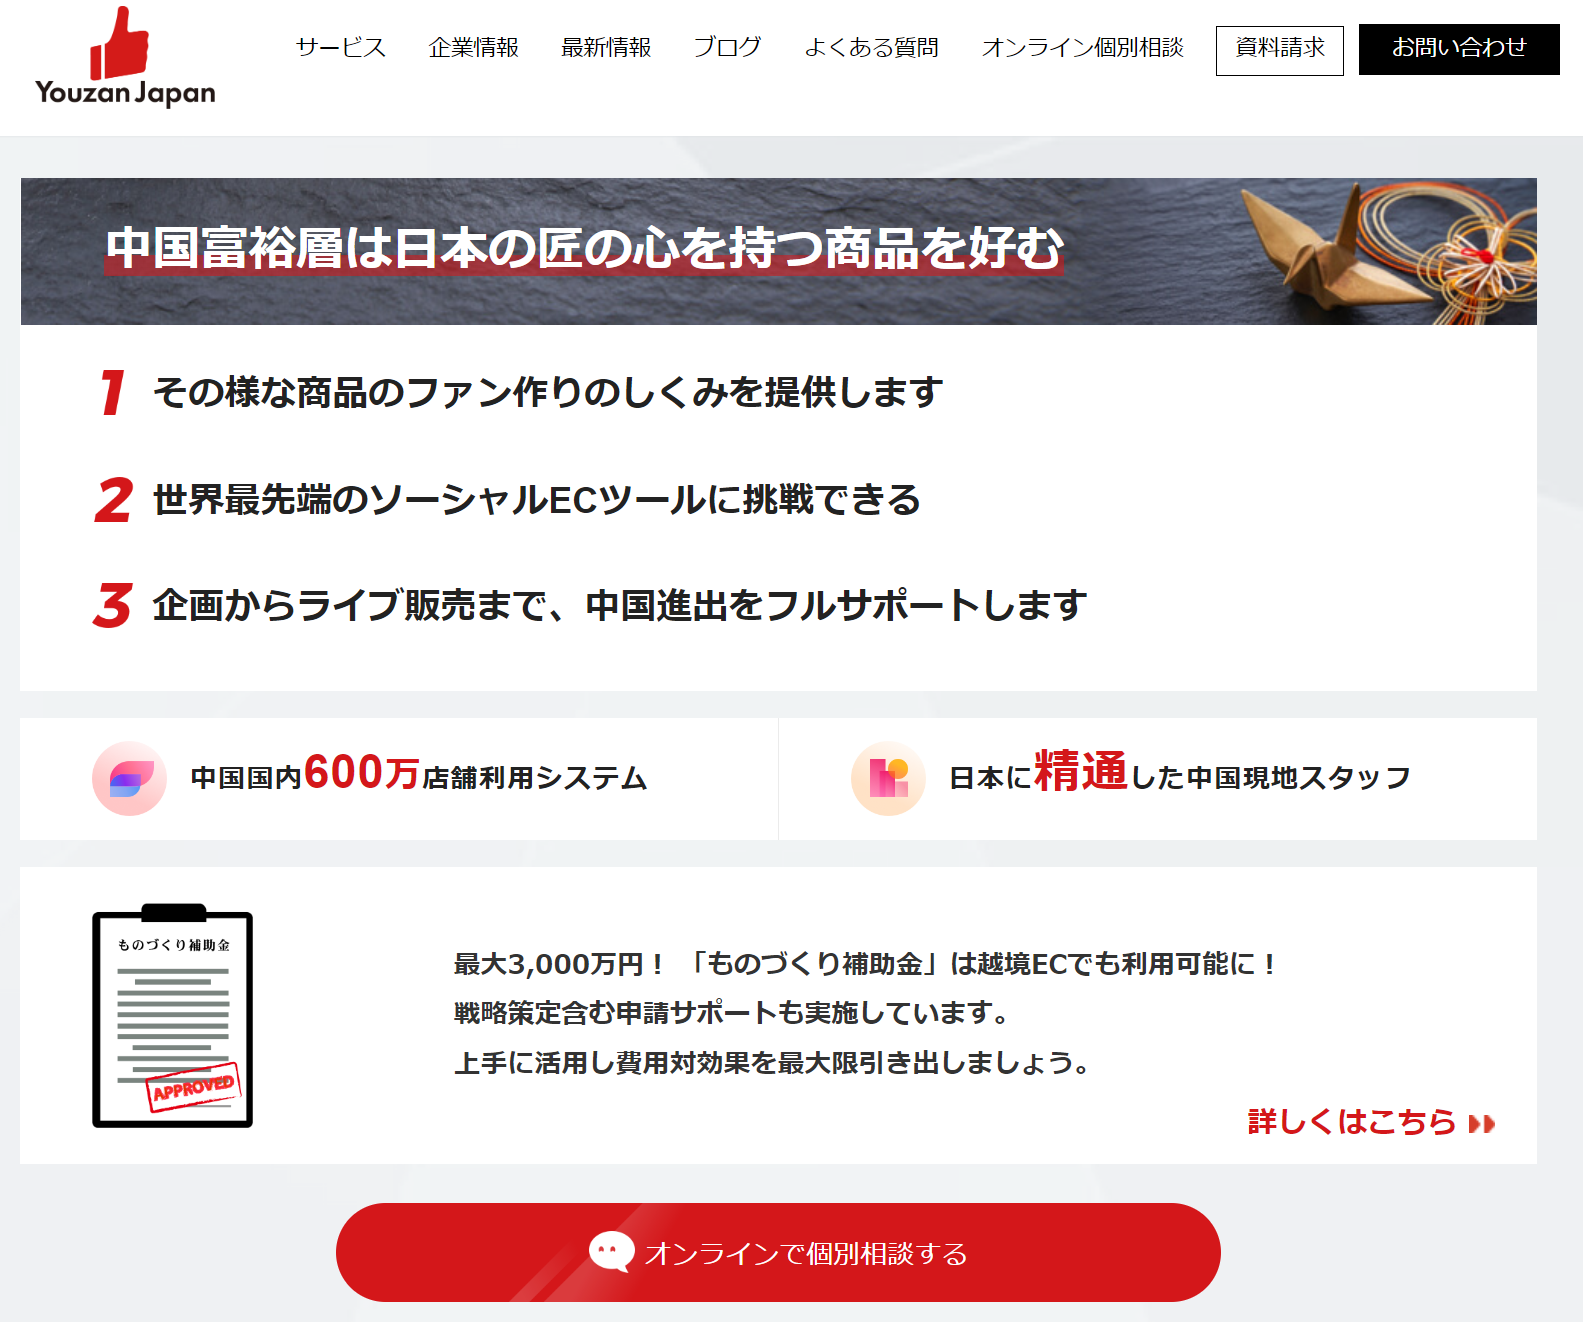 株式会社Youzan Japanの越境EC支援ページのキャプチャ